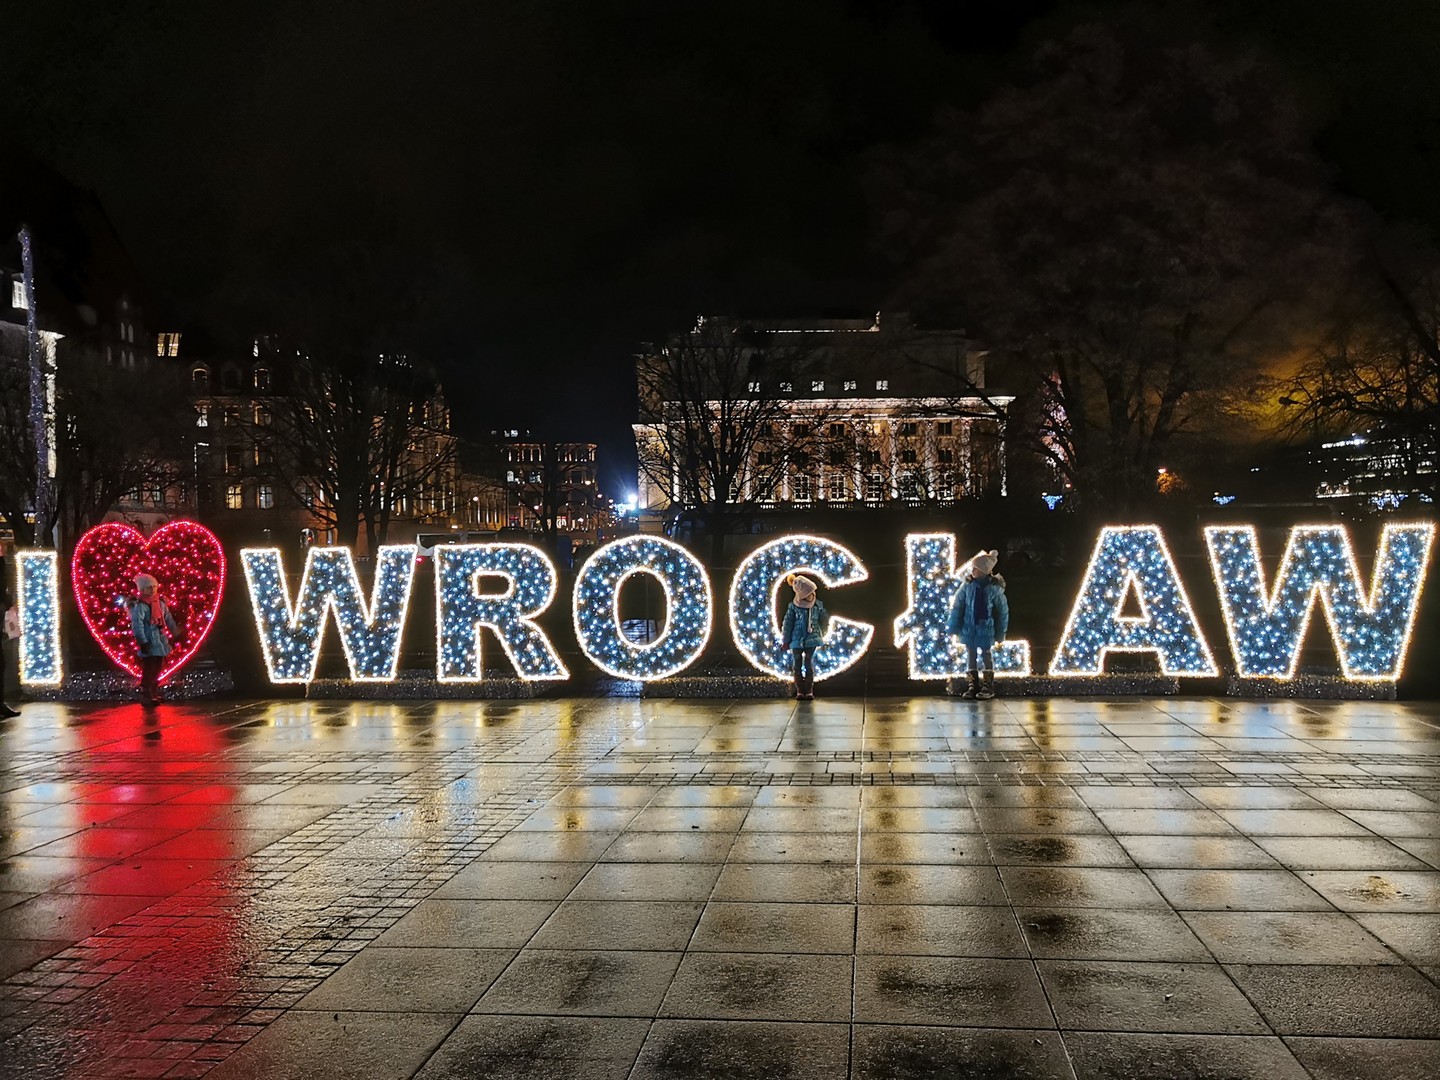 pl. Wolności, I love Wrocław